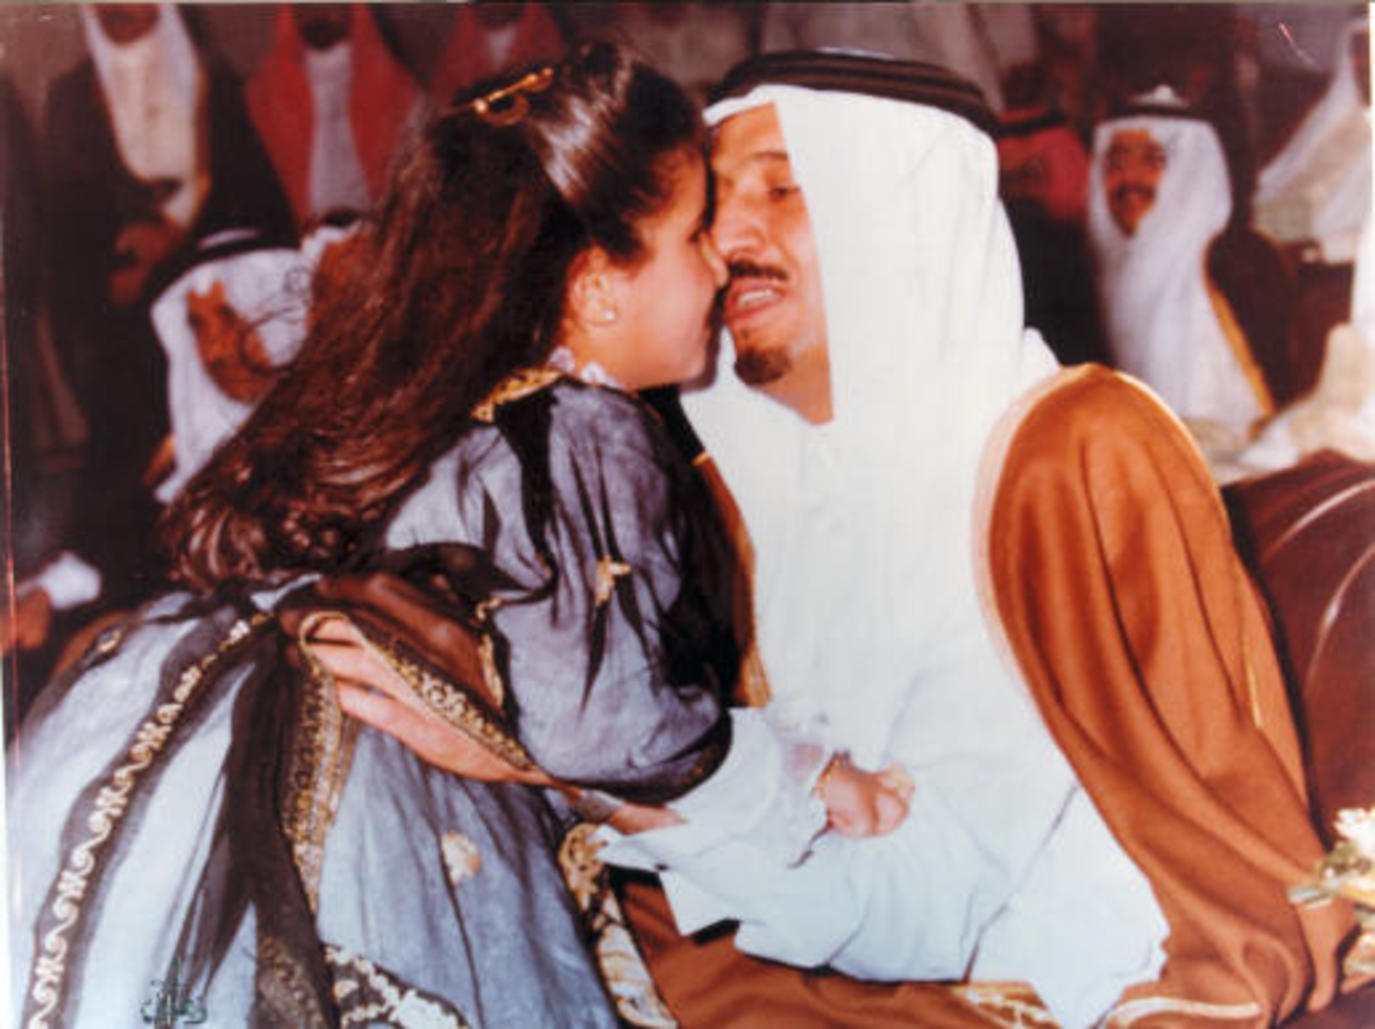 سلمان عبدالعزيز بن حصة الأميرة زواج الأميرة